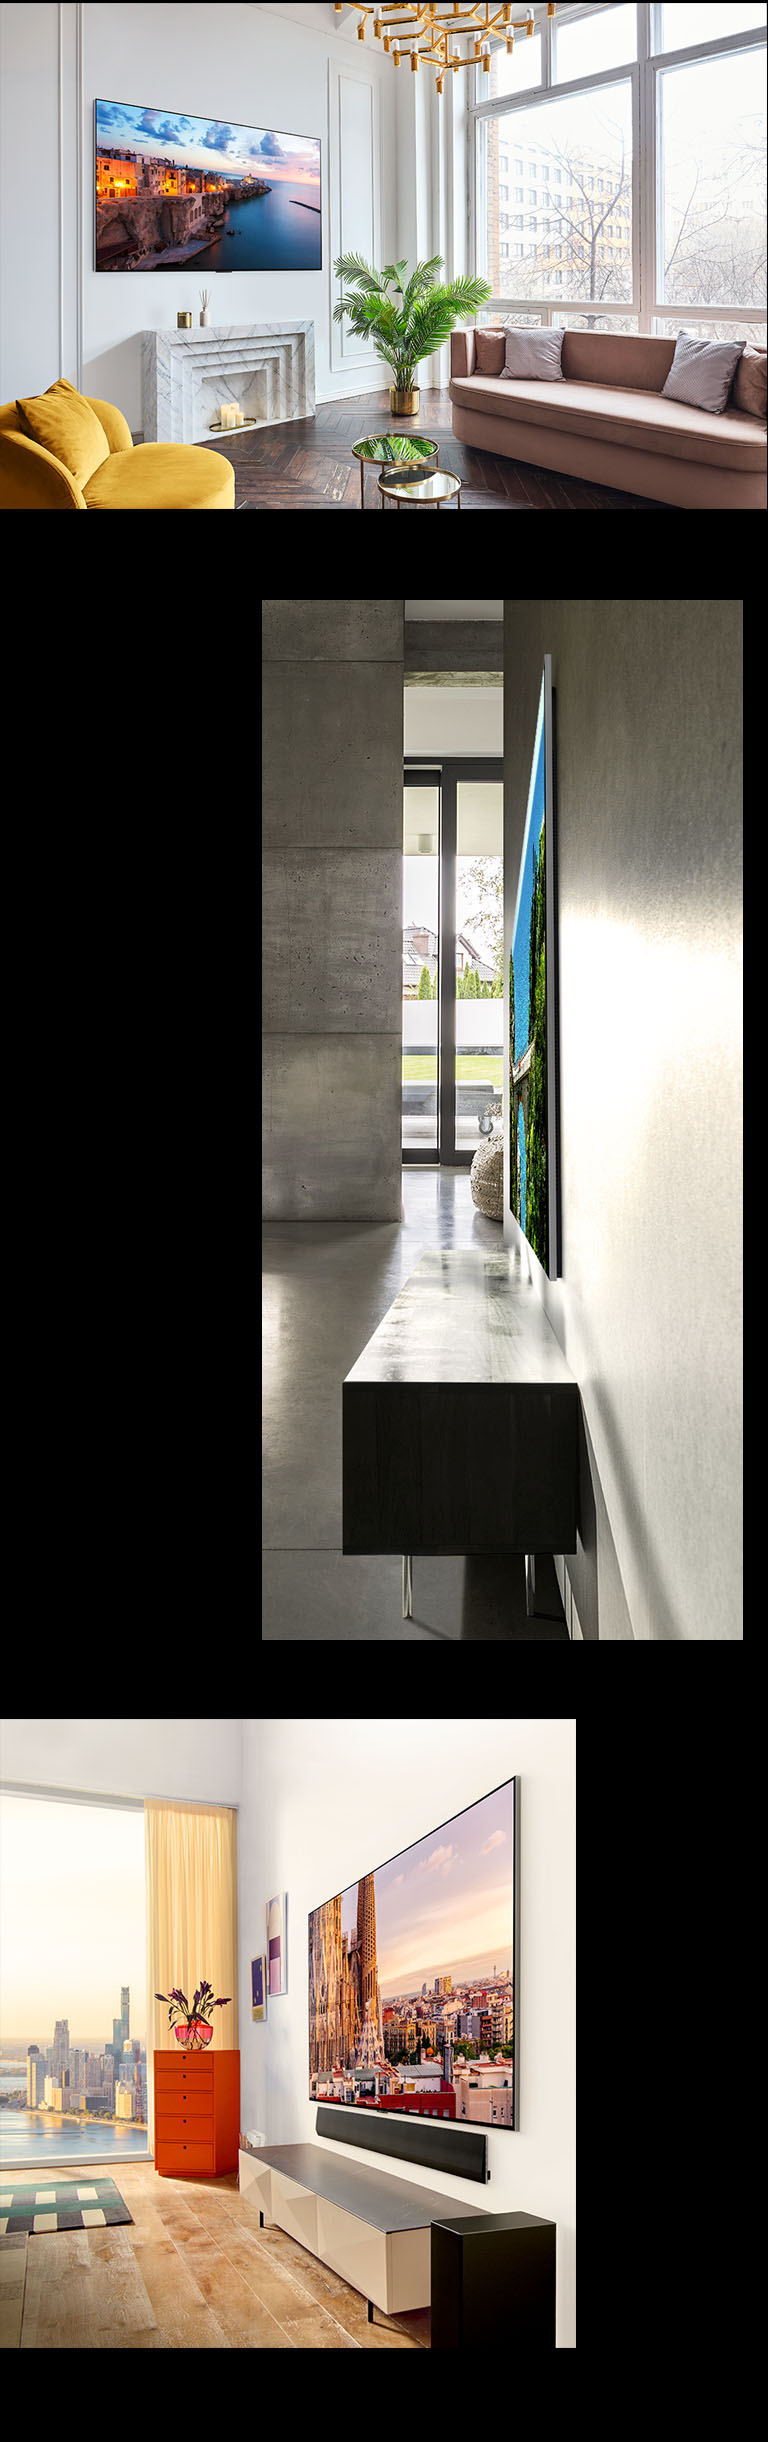 Una imagen del LG OLED G3 en la pared de una habitación decorada mostrando su diseño "Una pared". Una vista lateral de las dimensiones increíblemente delgadas del LG OLED G3. Una vista angular de LG OLED G3 en la pared de un apartamento con vista a la ciudad con una barra de sonido debajo.